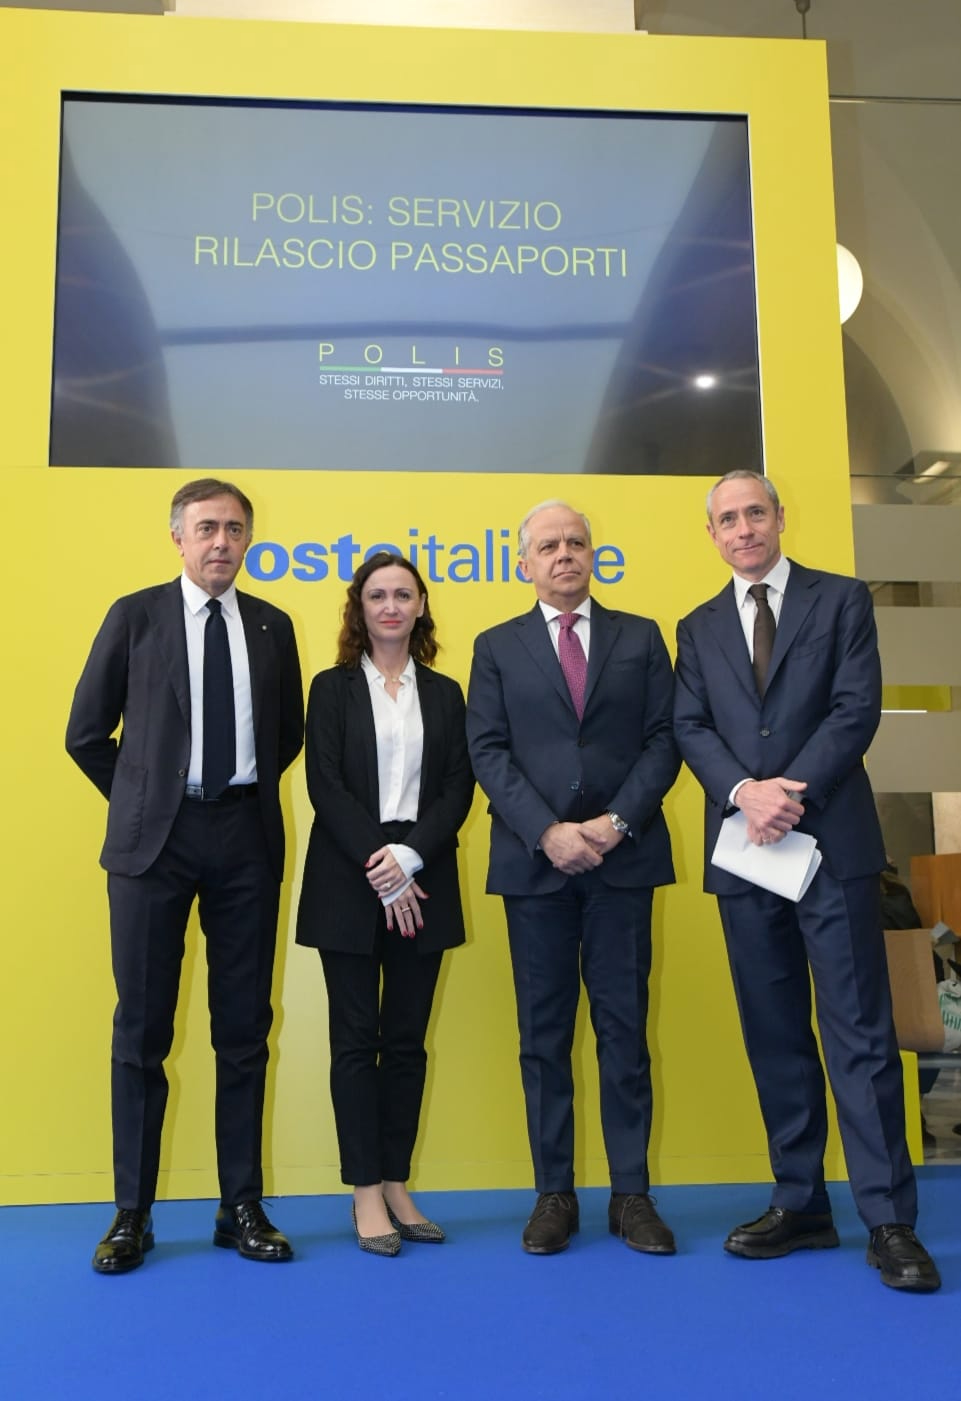 Giuseppe Lasco,Silvia Maria Rovere, Matteo Piantedosi, Matteo Del Fante